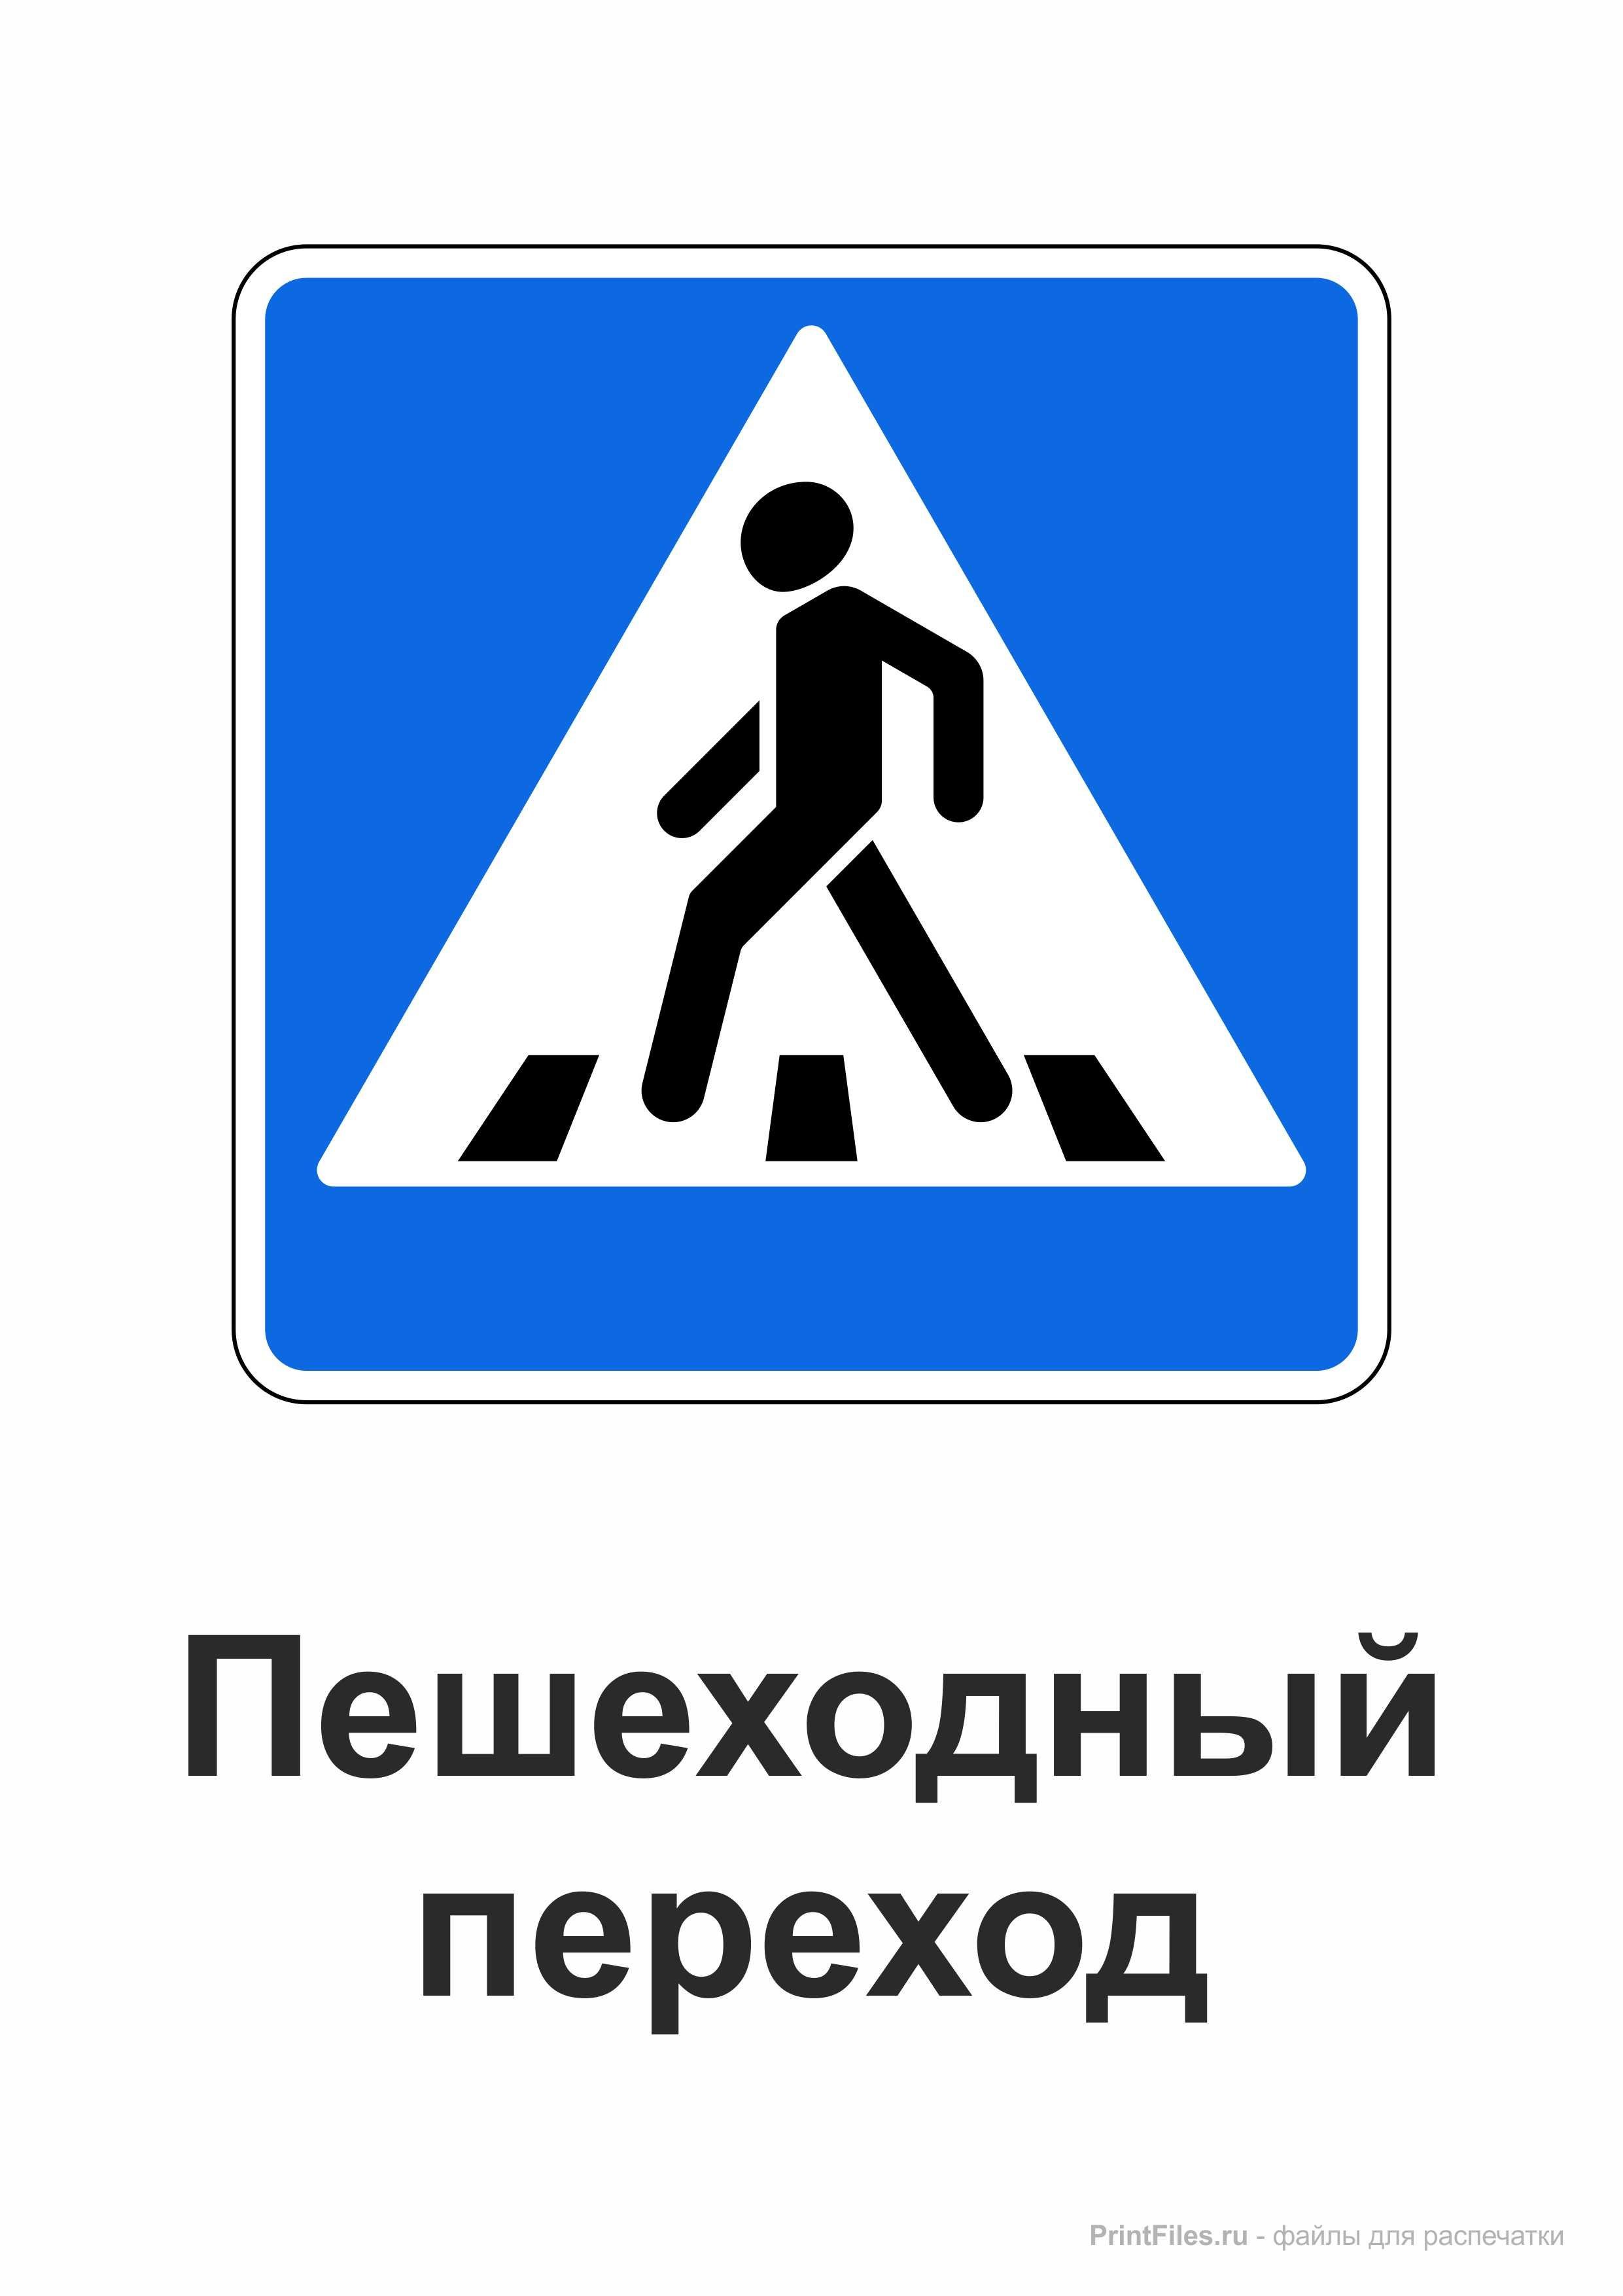 Имени пешеход. Знак пешеходный переход. Дорожный знак пешеходный переход. Дорожные знаки для пешеходов. Дорожный знак пешеходный перех.